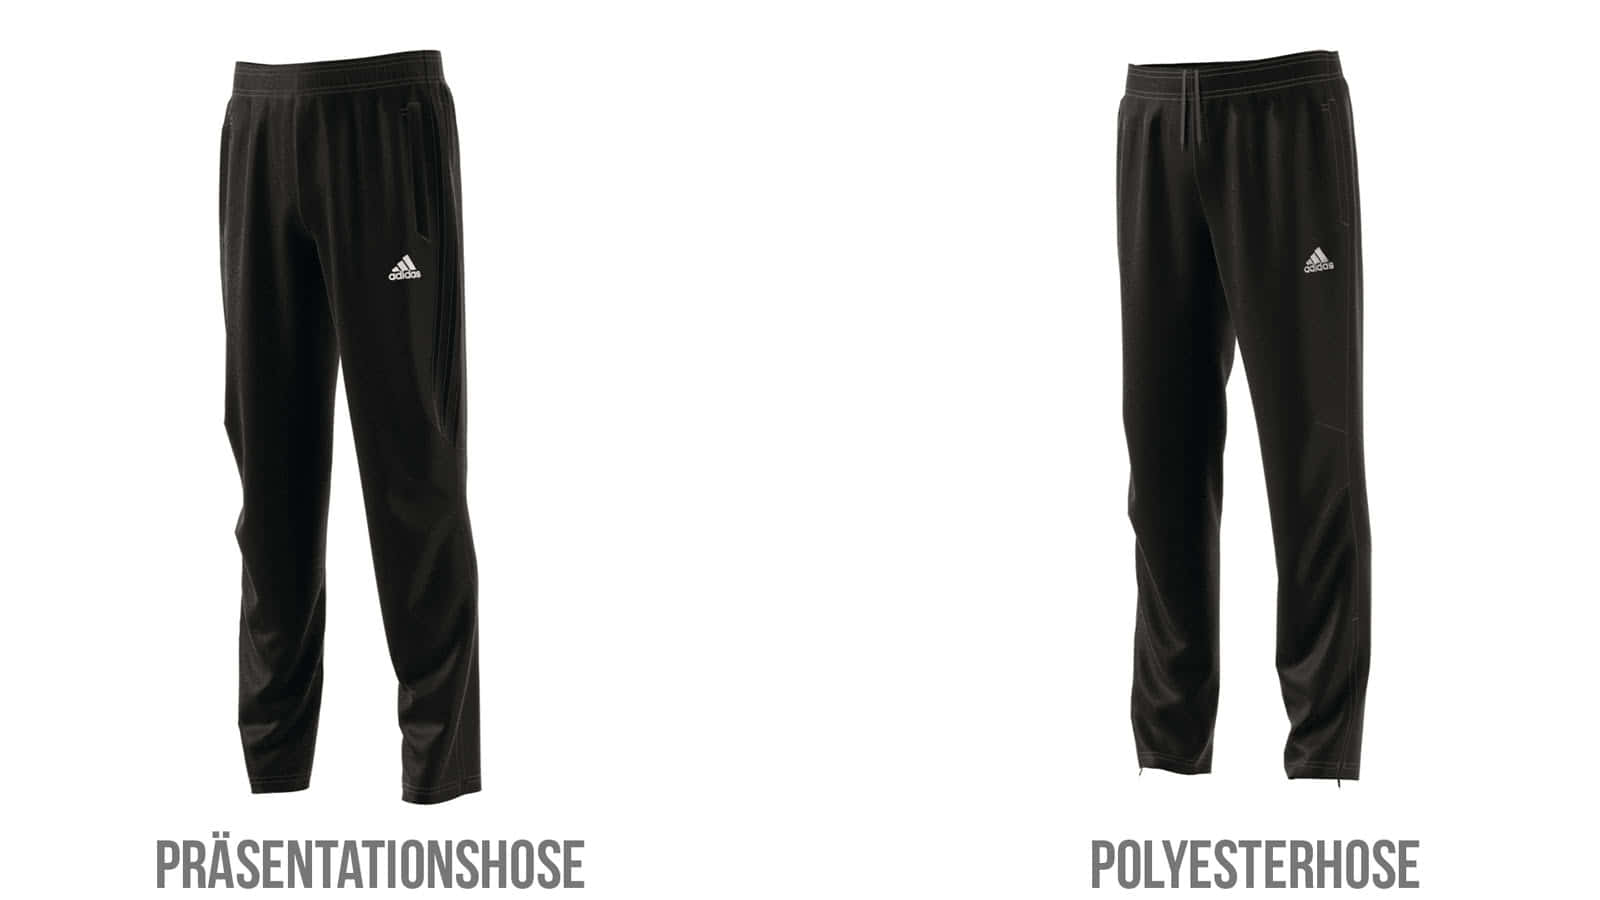 Die Adidas Präsentationshose und Polyesterhose